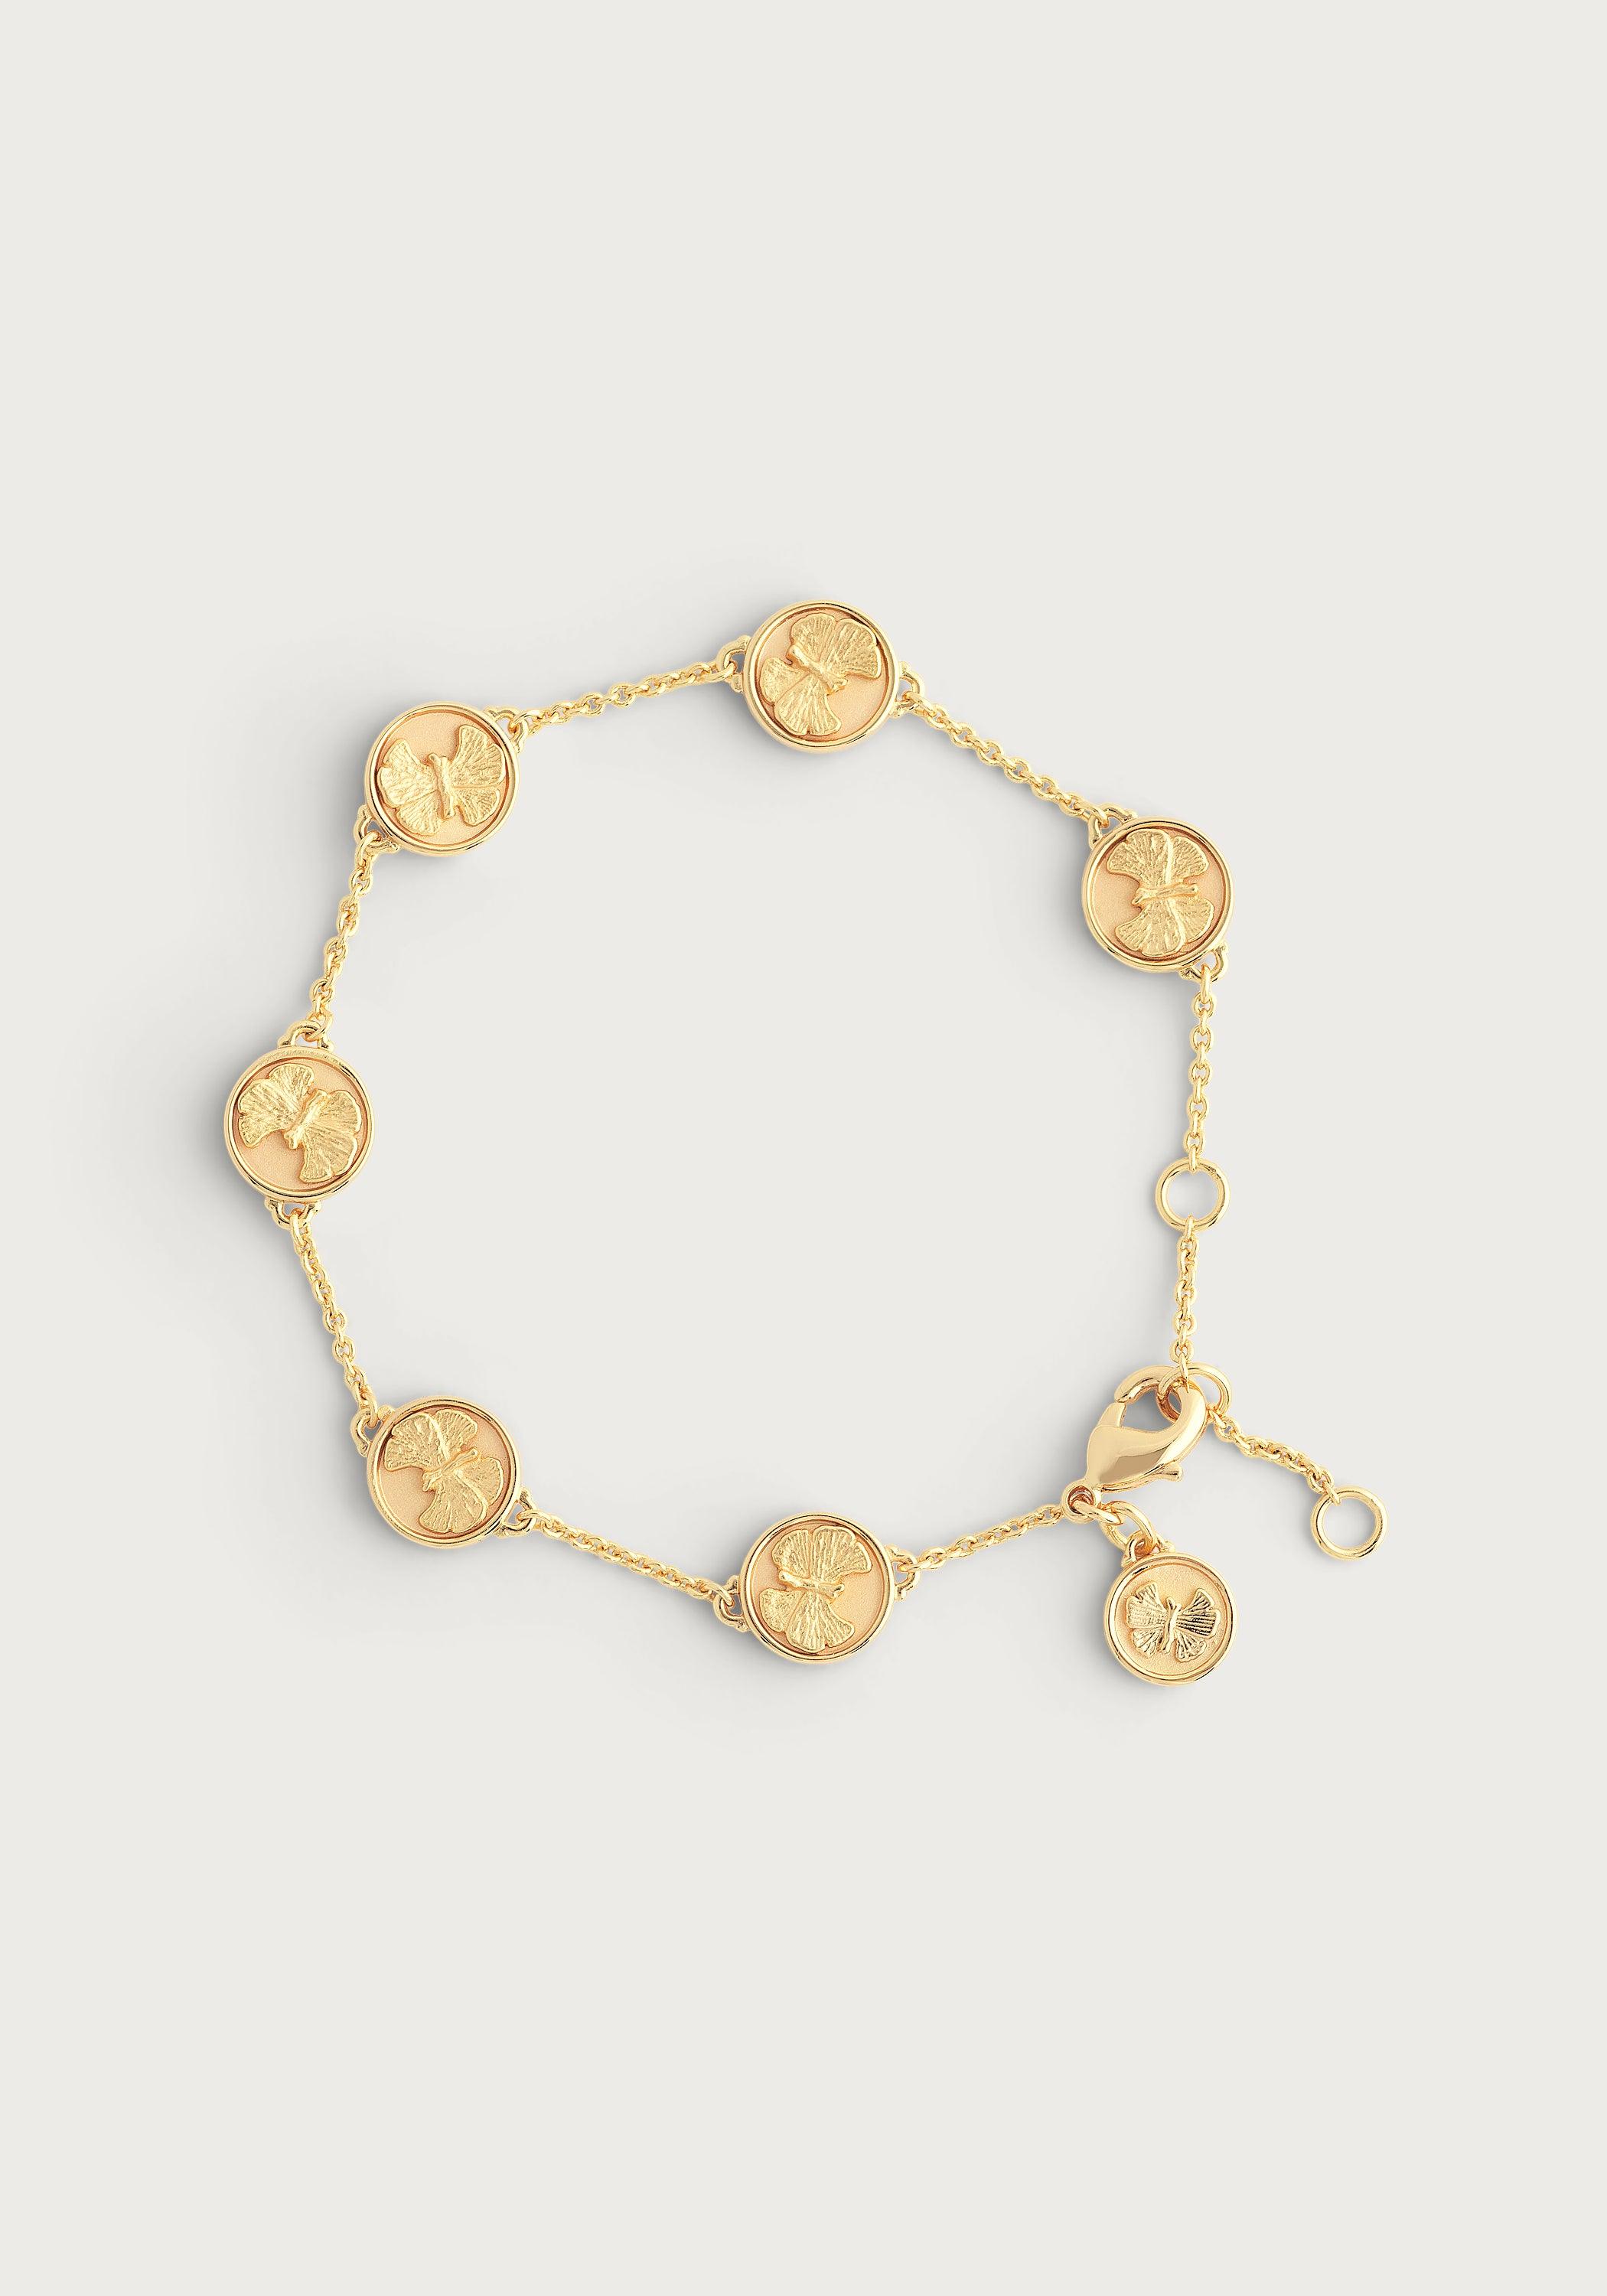 Vintage Louis Vuitton 18 Karat Gold Charm Bracelet For Sale at